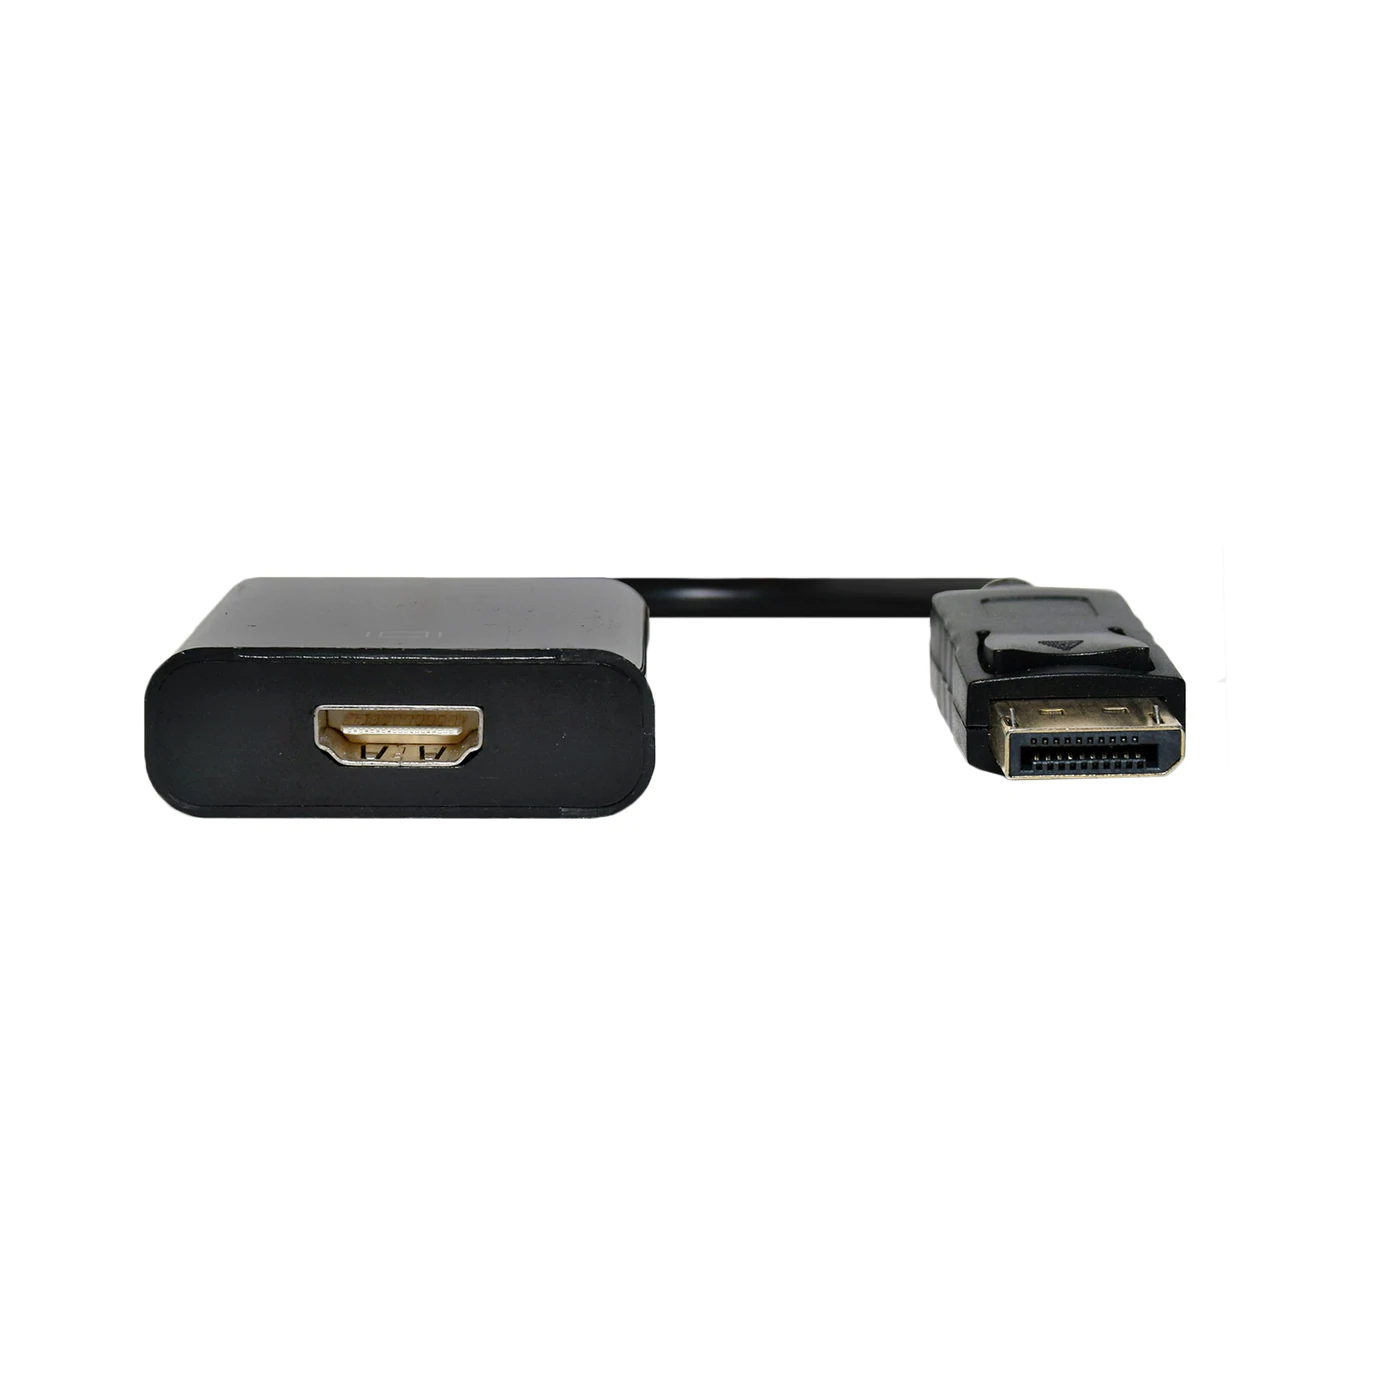 IntCo Adaptador Display Port macho a HDMI hembra 4K 06-009